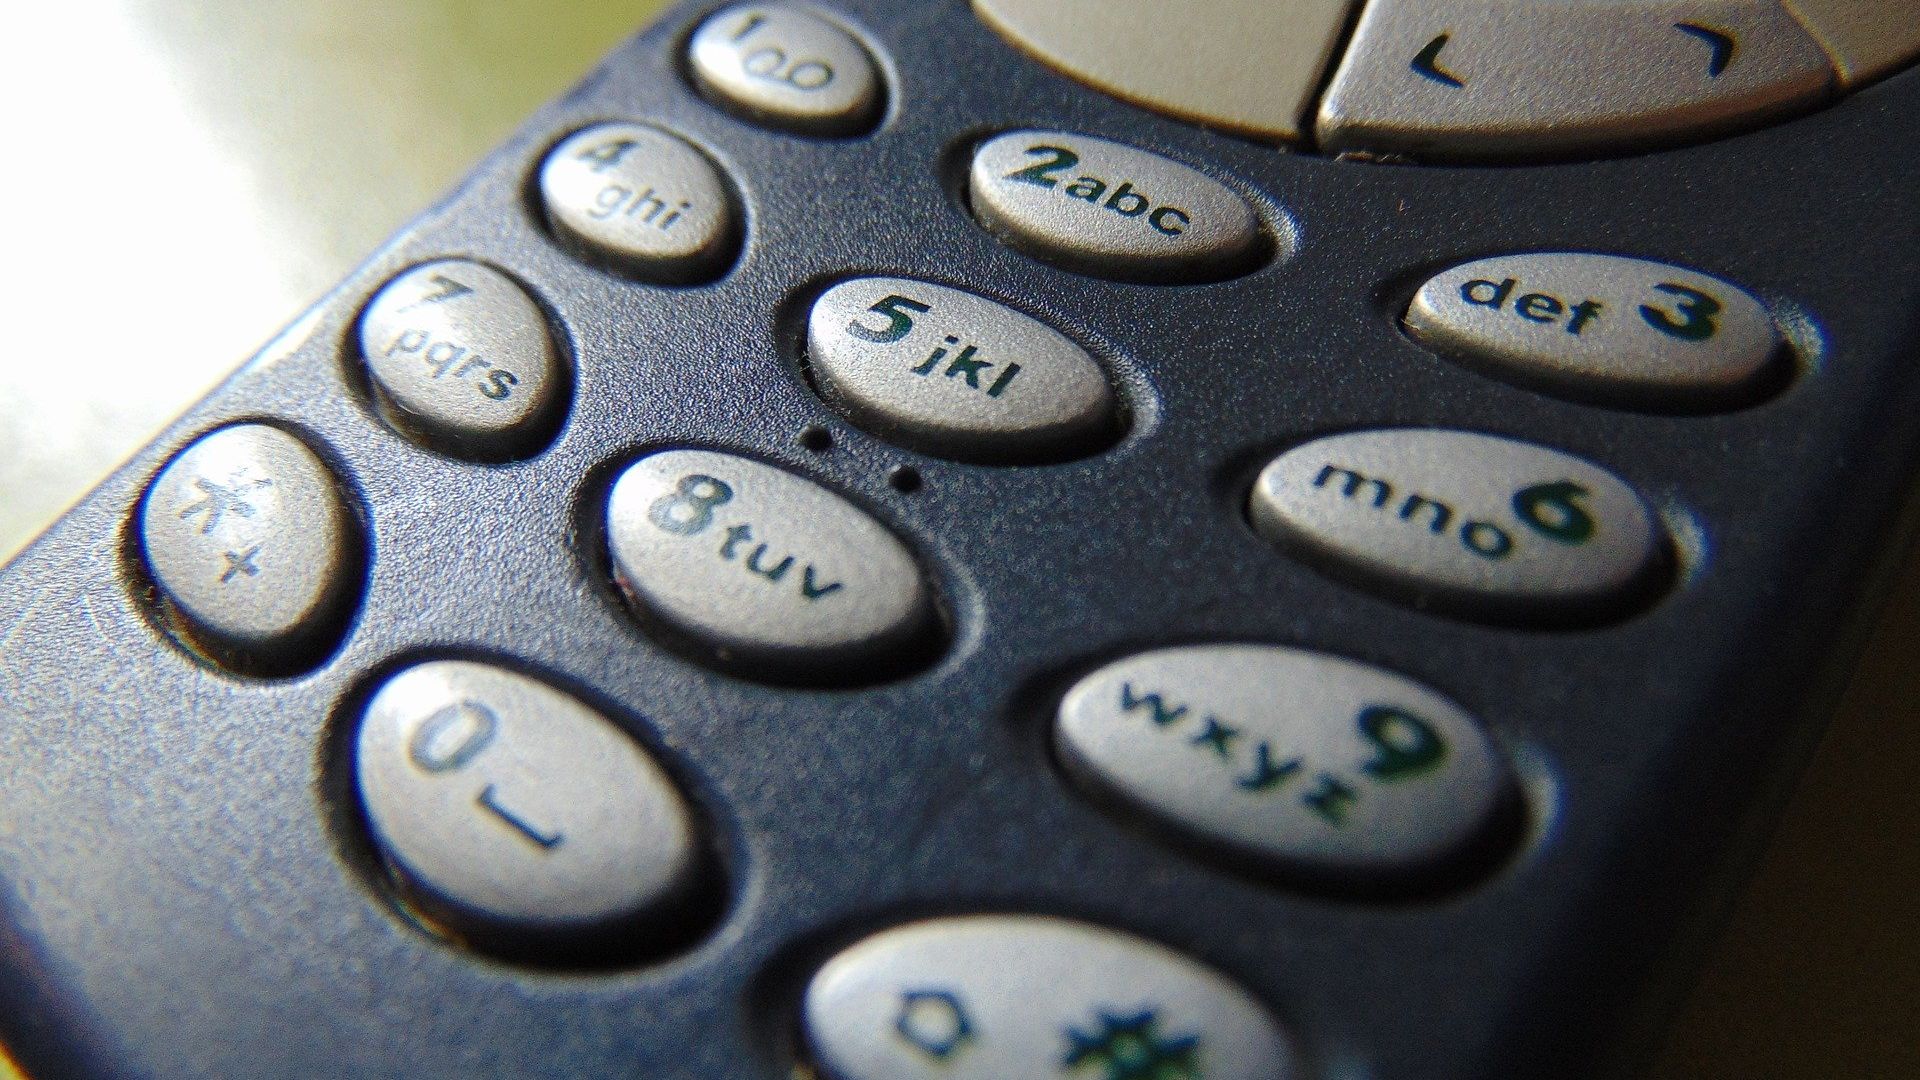 Nokia 3310 стана на 20 години